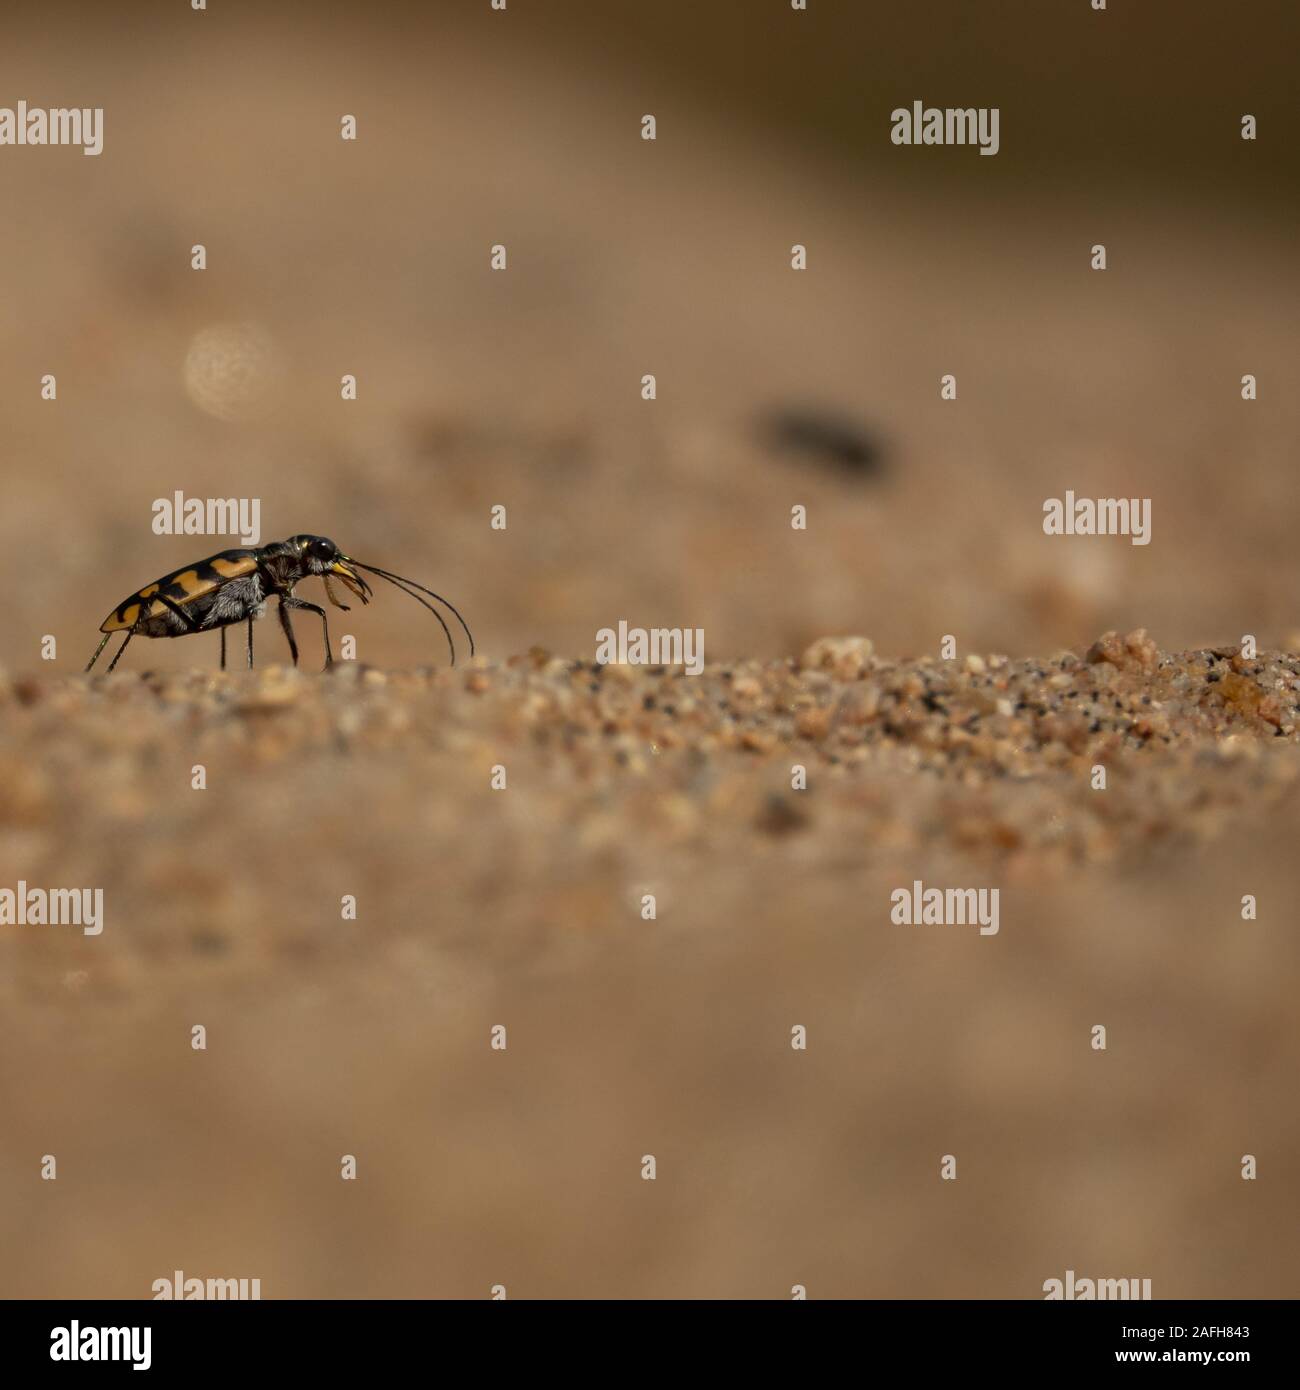 Small bug macro over the sand grains Stock Photo